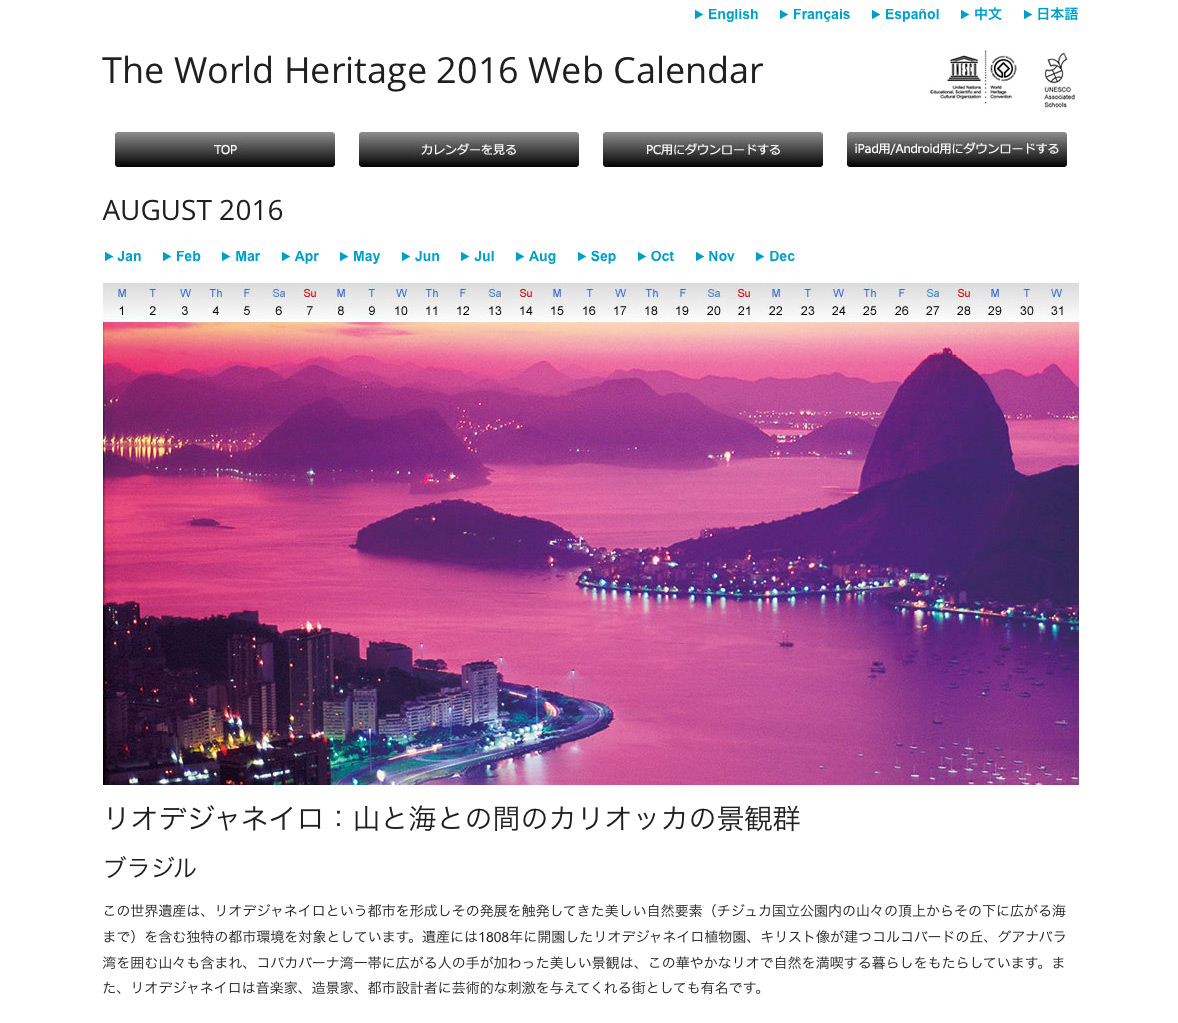 ユネスコ世界遺産カレンダー 16年版のアプリを提供開始 パナソニックがユネスコと共同制作 トピックス Panasonic Newsroom Japan パナソニック ニュースルーム ジャパン